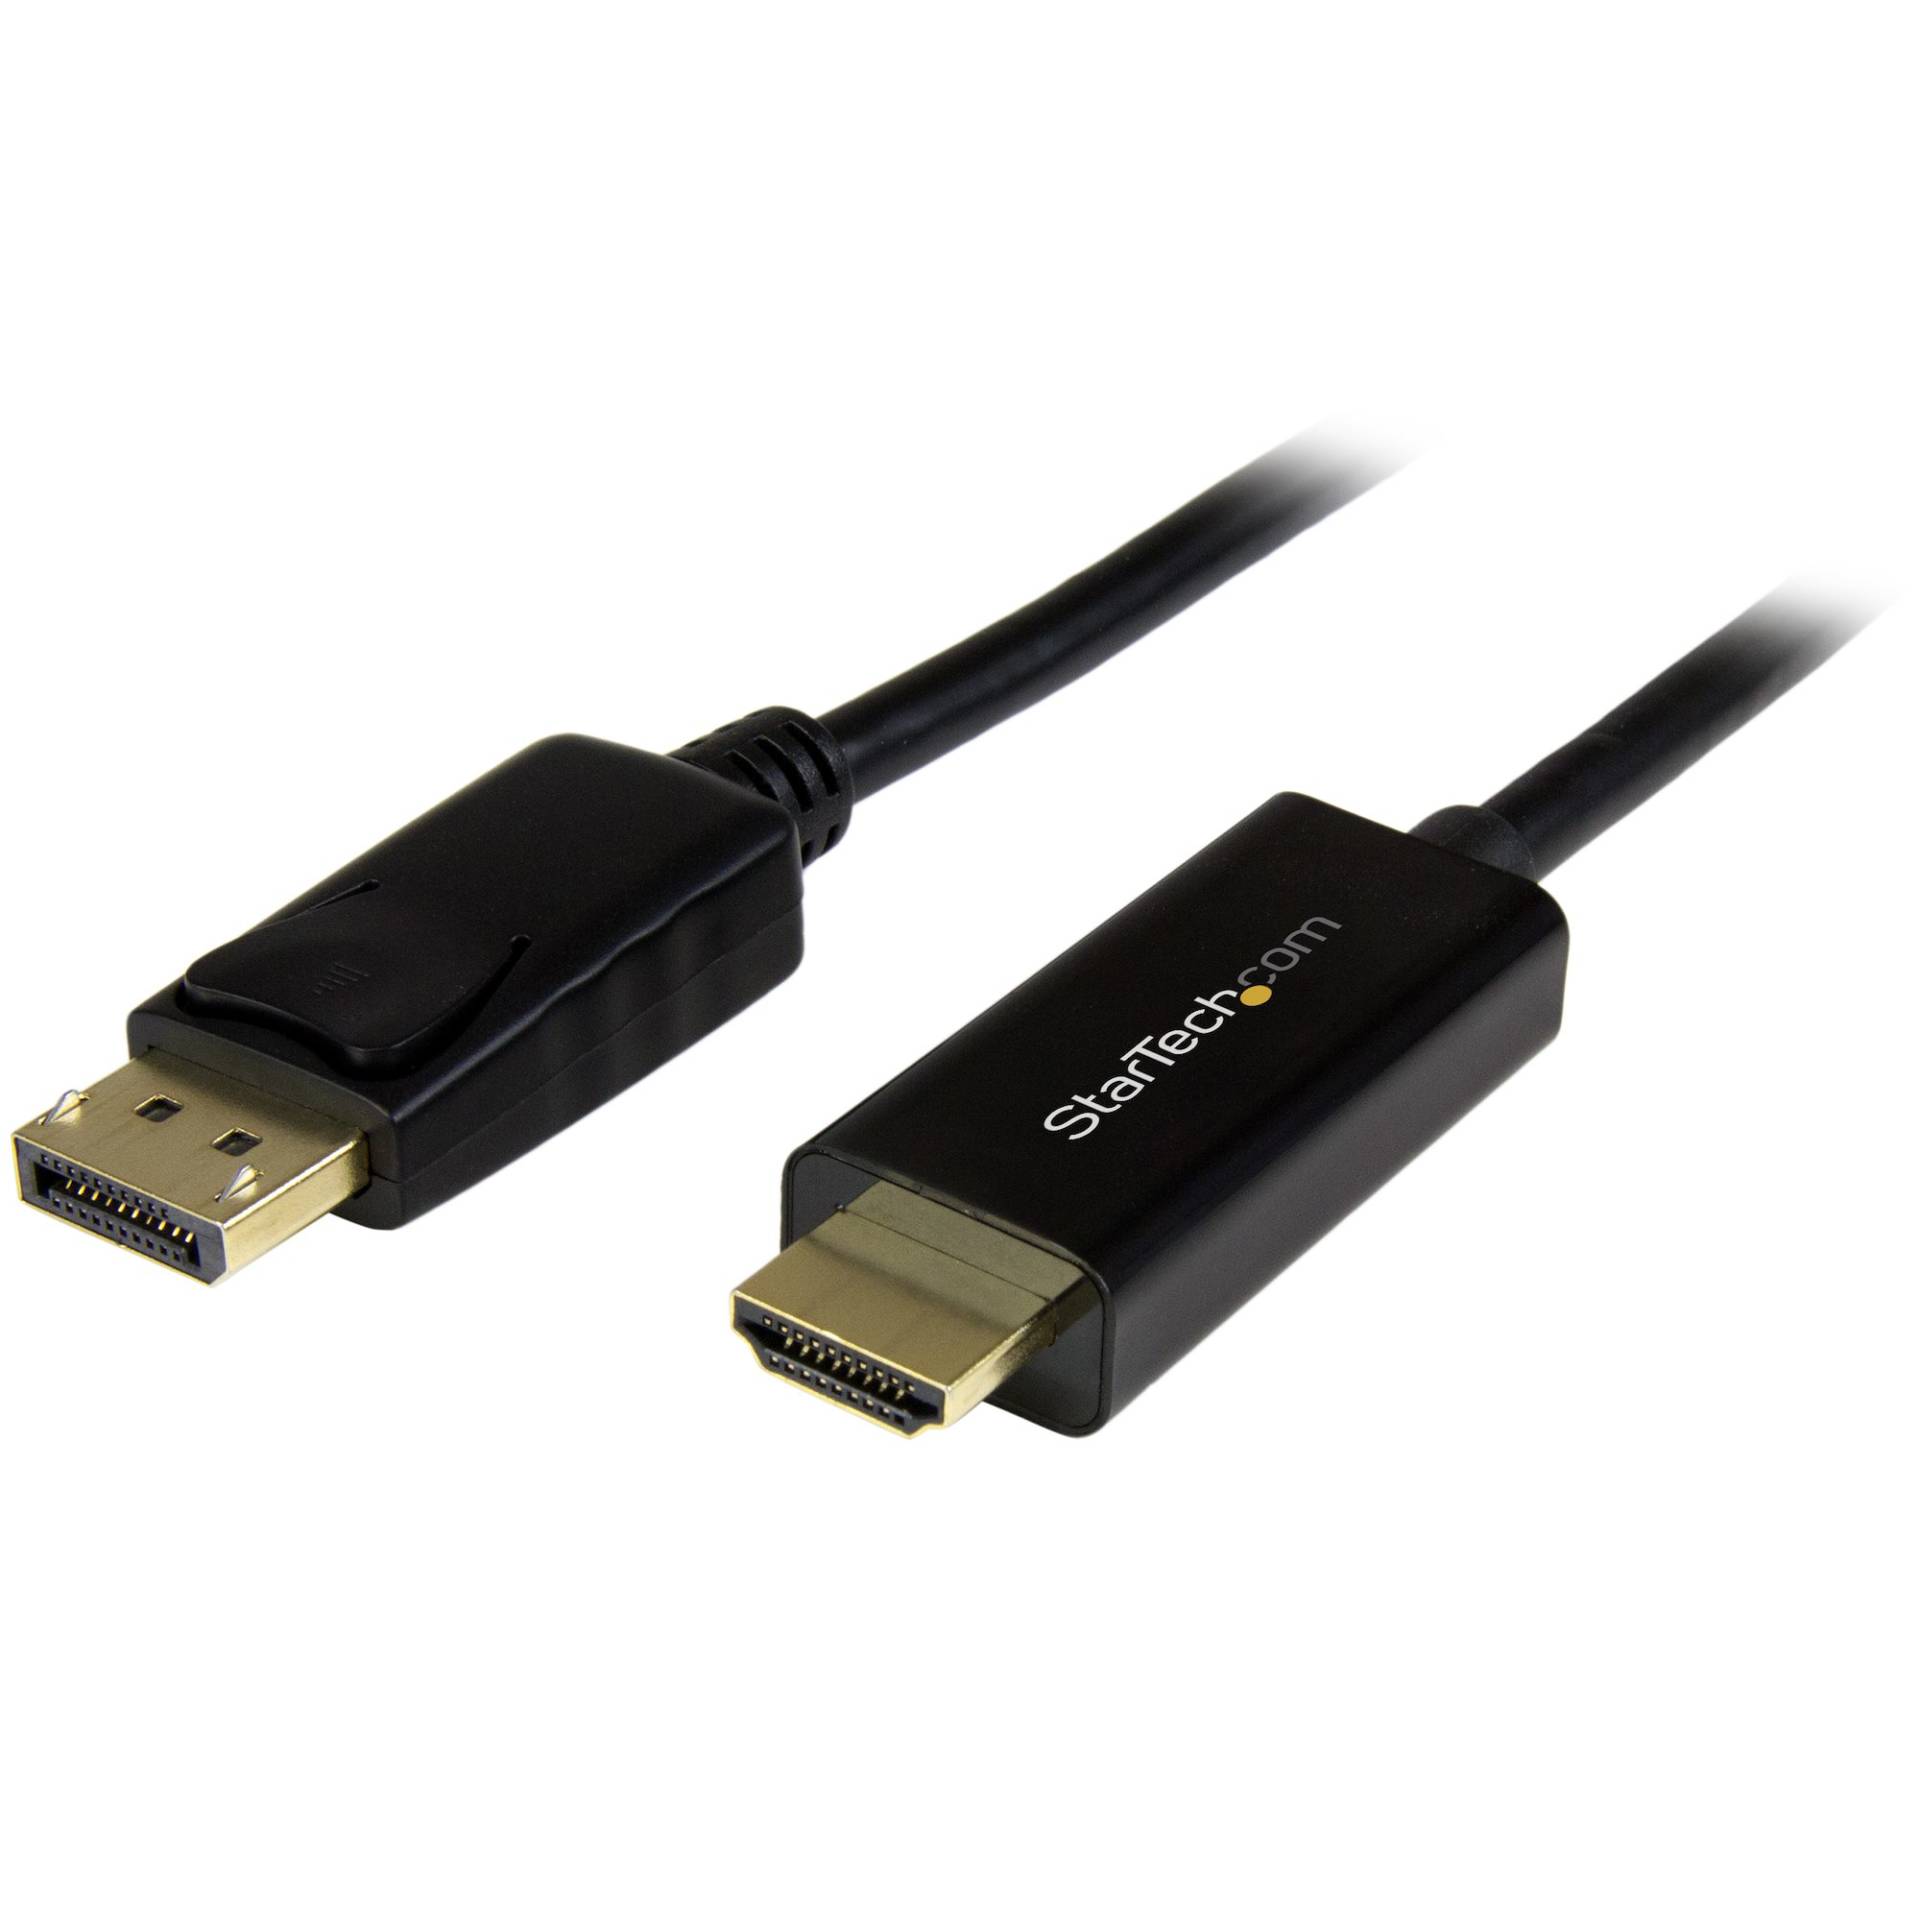 AB121GEN23 – CABLE DE 3M ADAPTADOR DISPLAYPORT A HDMI.02